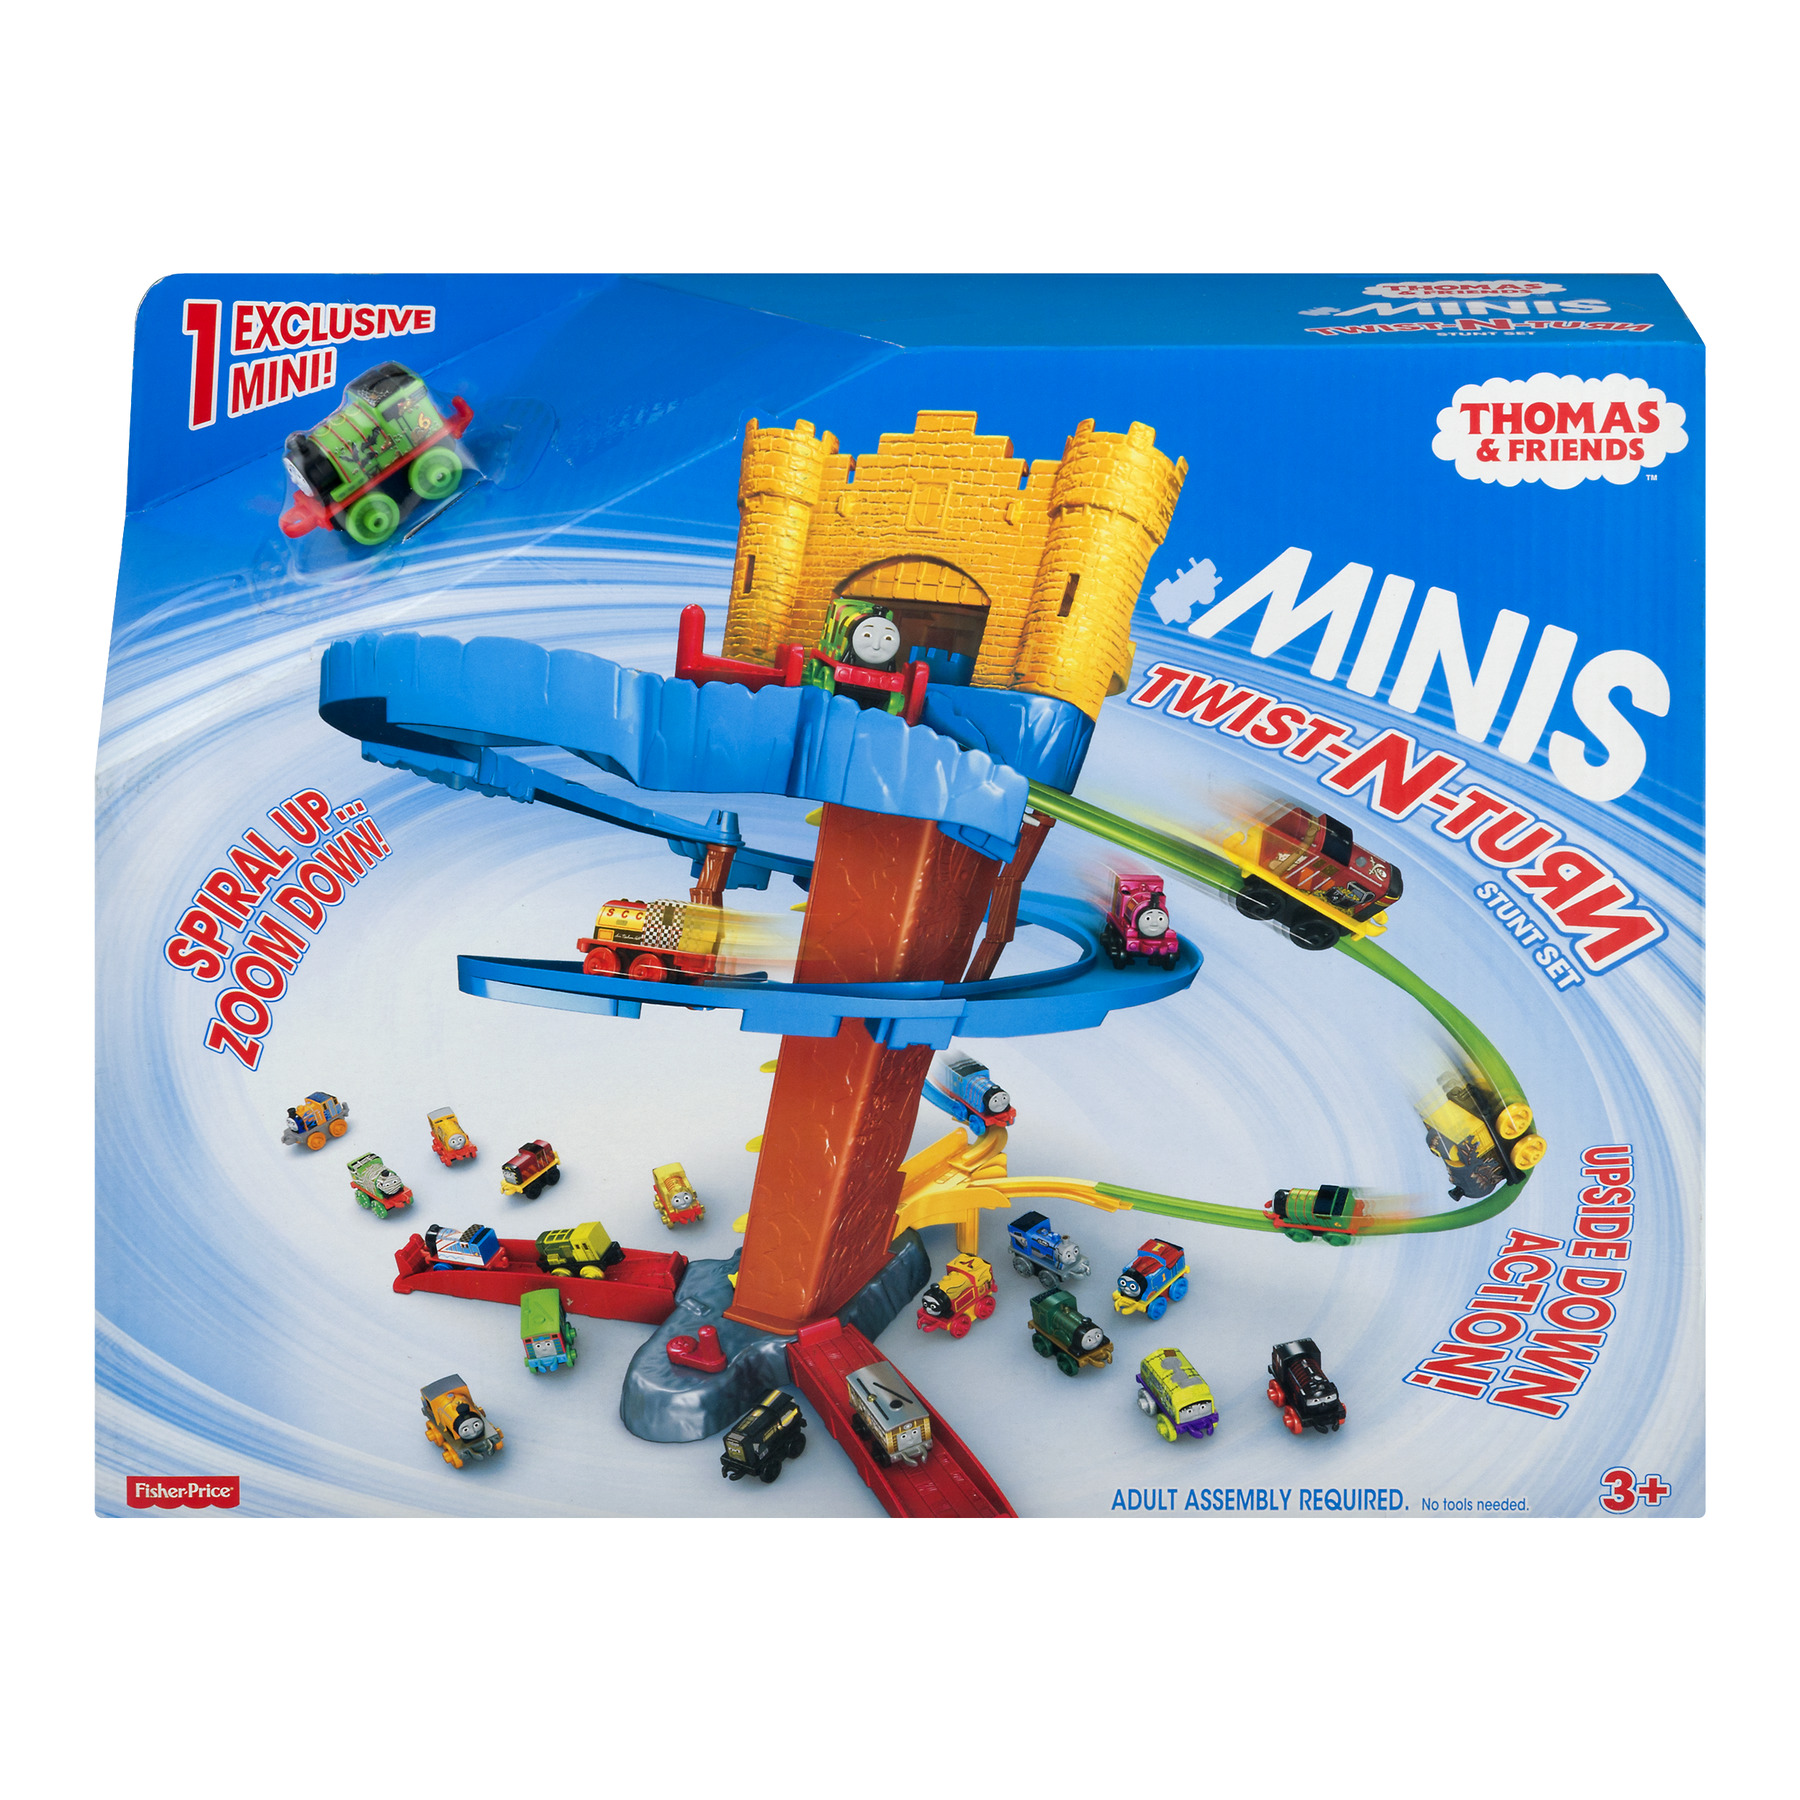 Thomas & Friends MINIS Twist-N-Turn Stunt Set - image 1 of 7